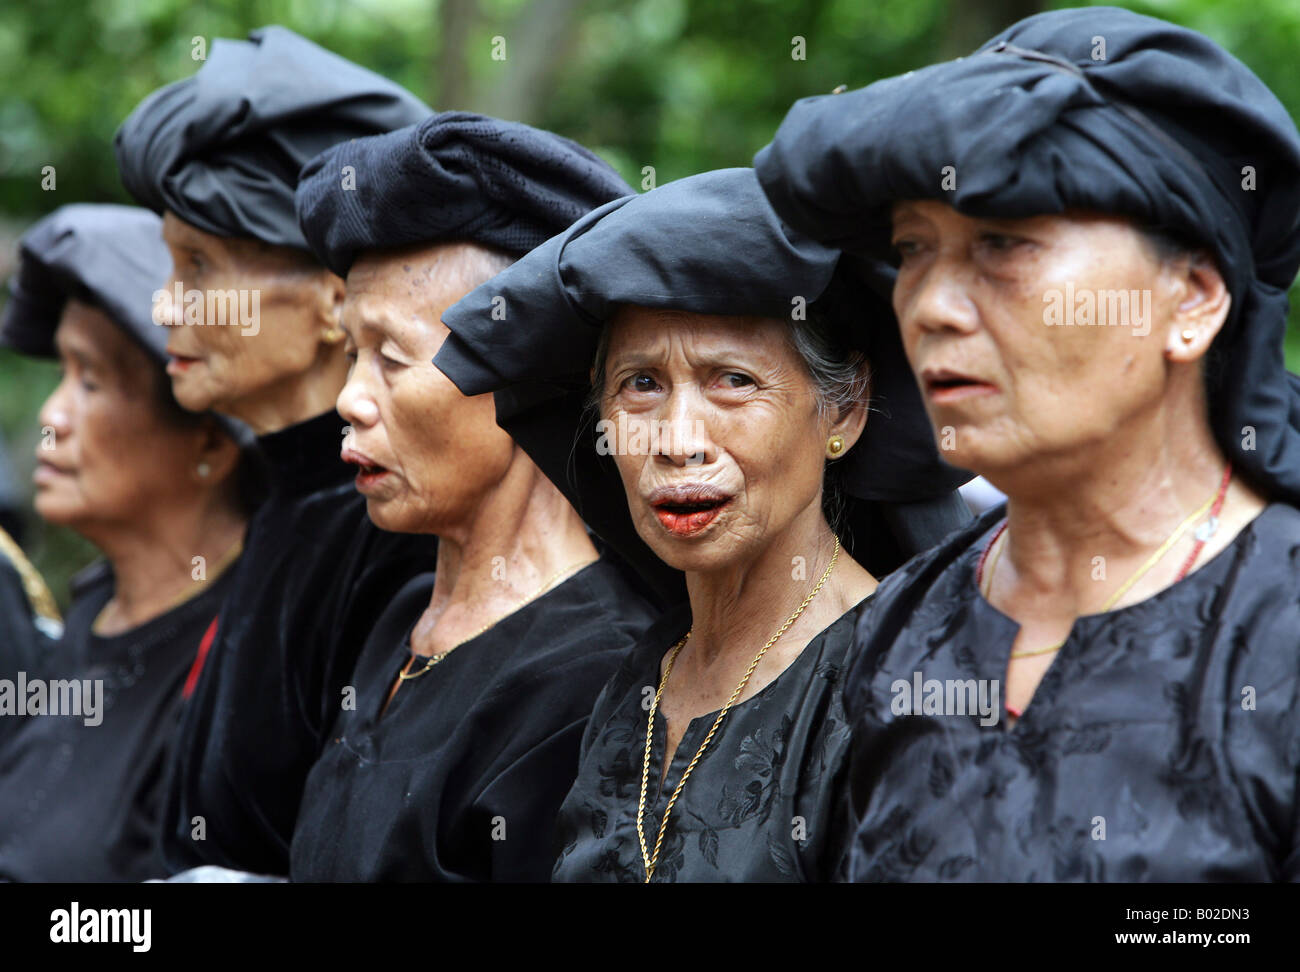 Indonesien Sulawesi Tana Toraja: traditionelle Beerdigung. Familienmitglieder, Verwandte und Freunde trauern in schwarzer Kleidung Stockfoto